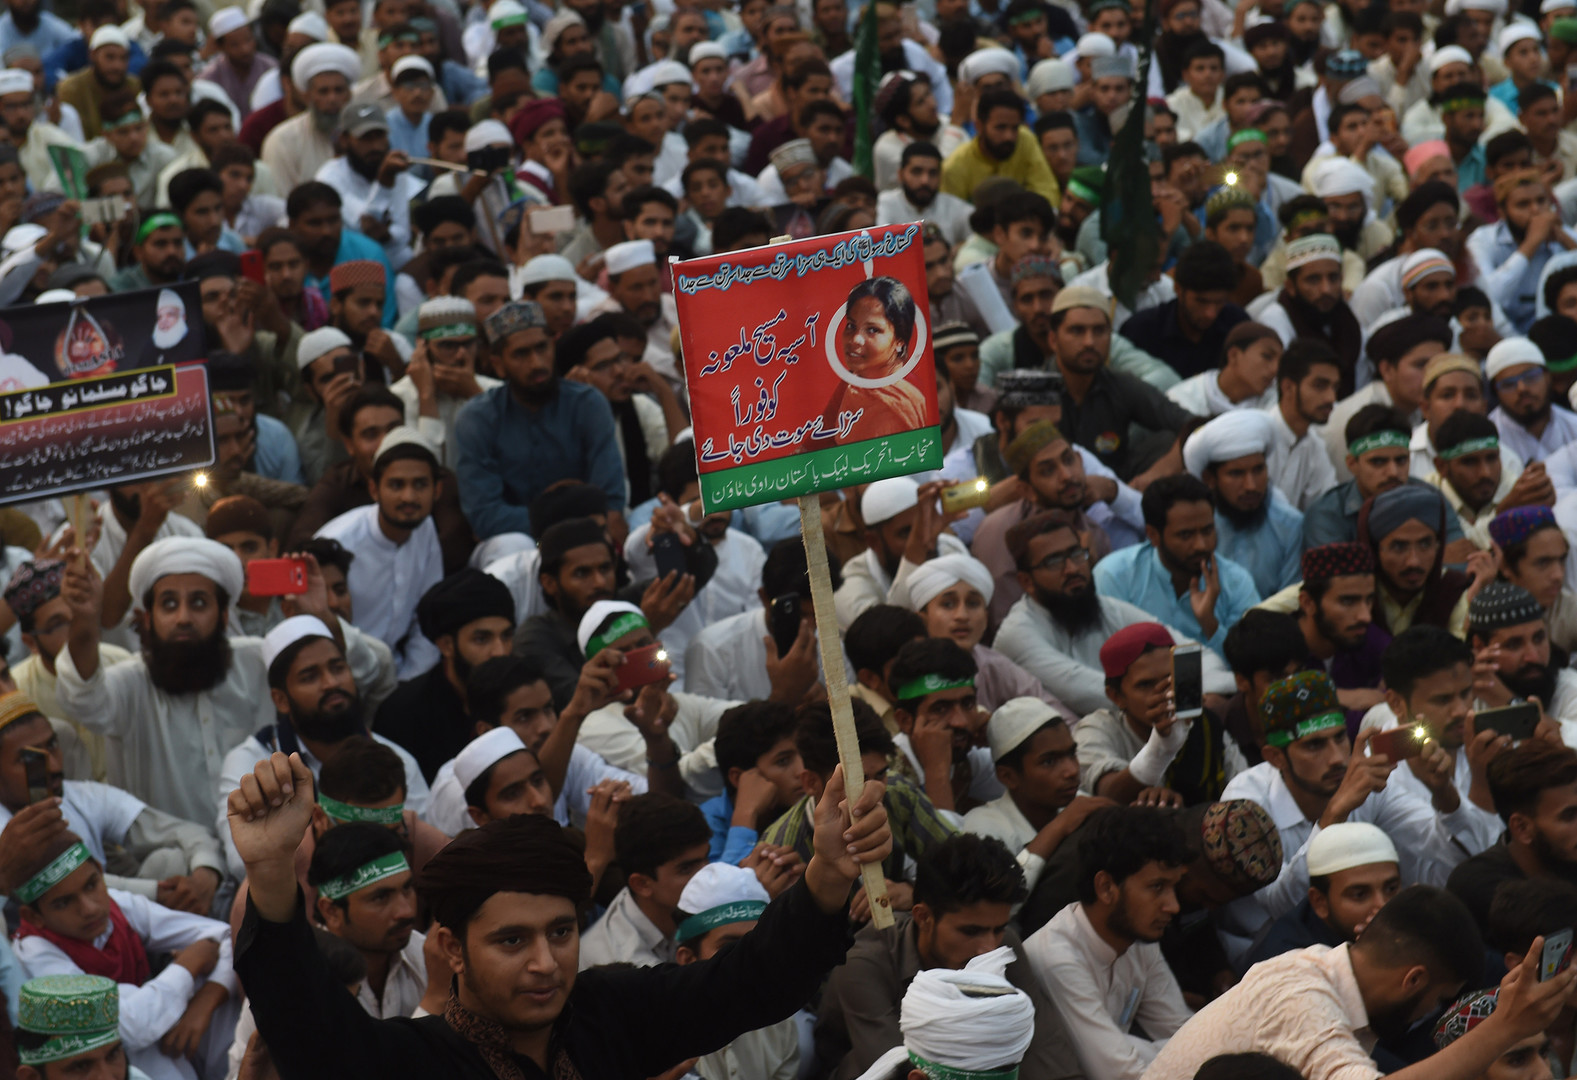 Des milliers de Pakistanais mobilisés pour exiger l'exécution d'une chrétienne accusée de blasphème